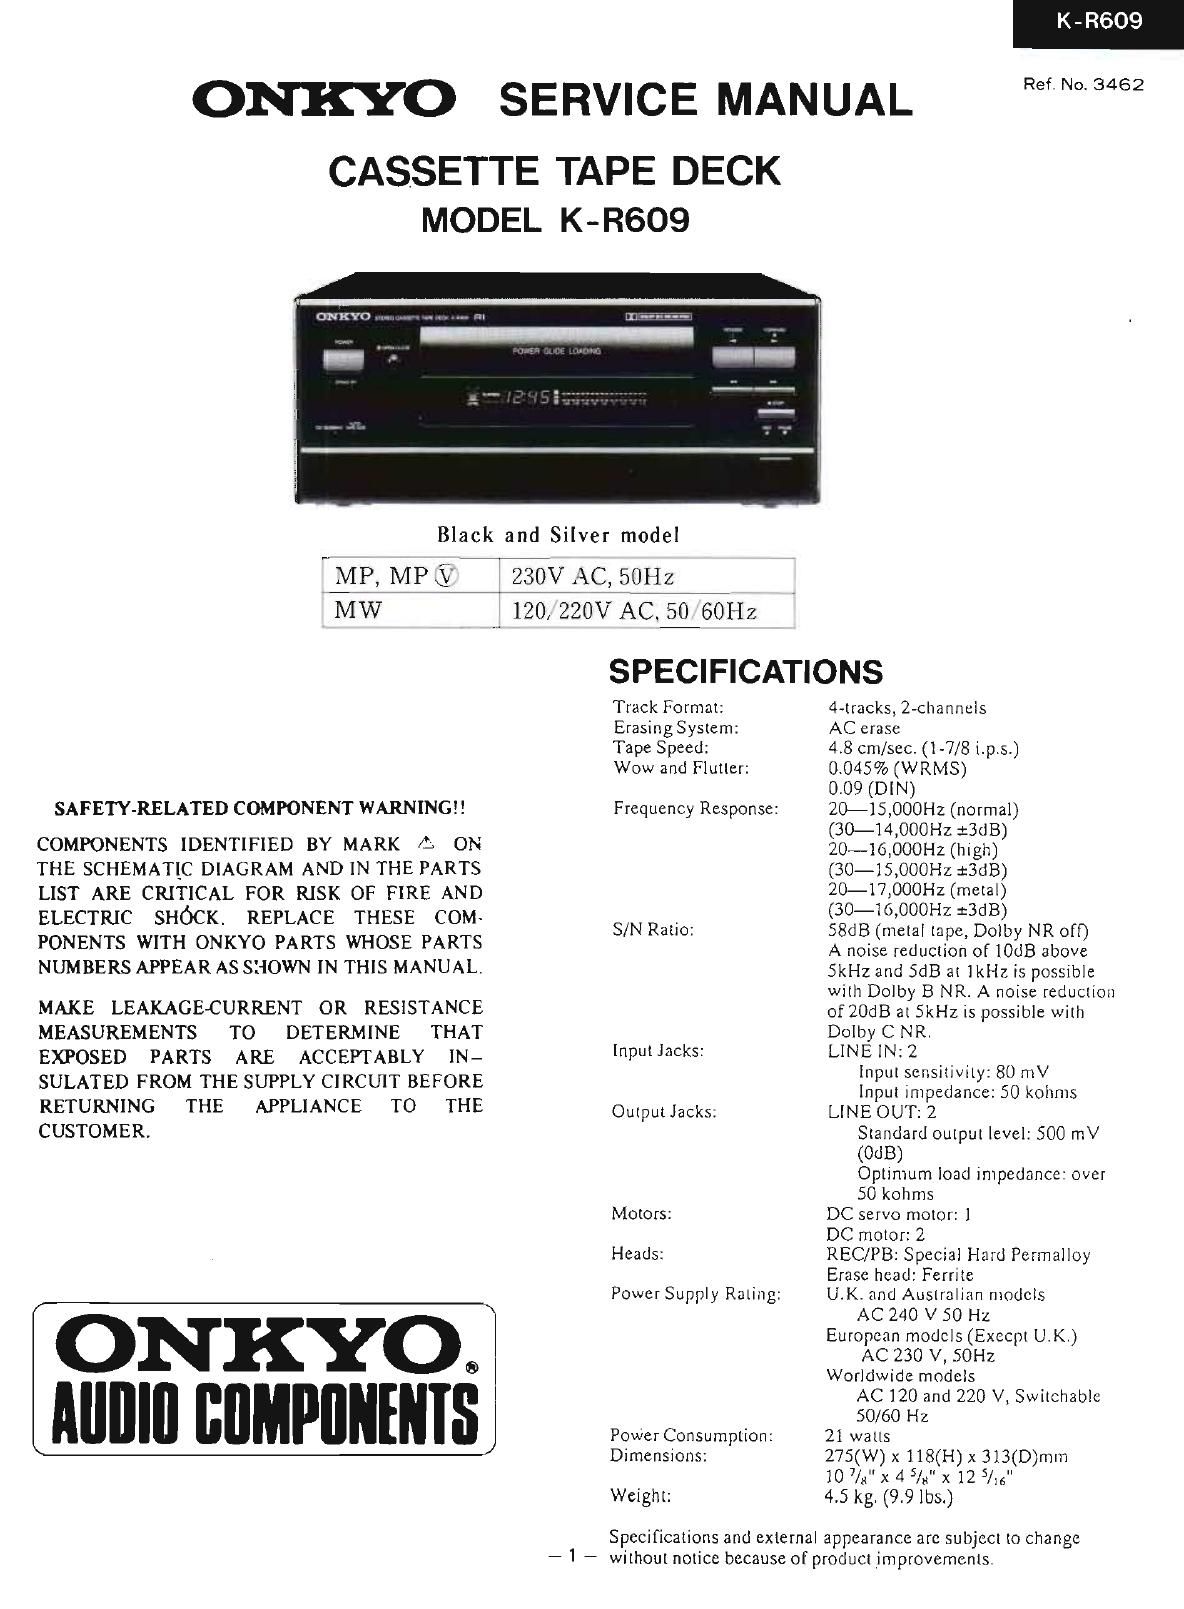 Onkyo KR 609 Service Manual